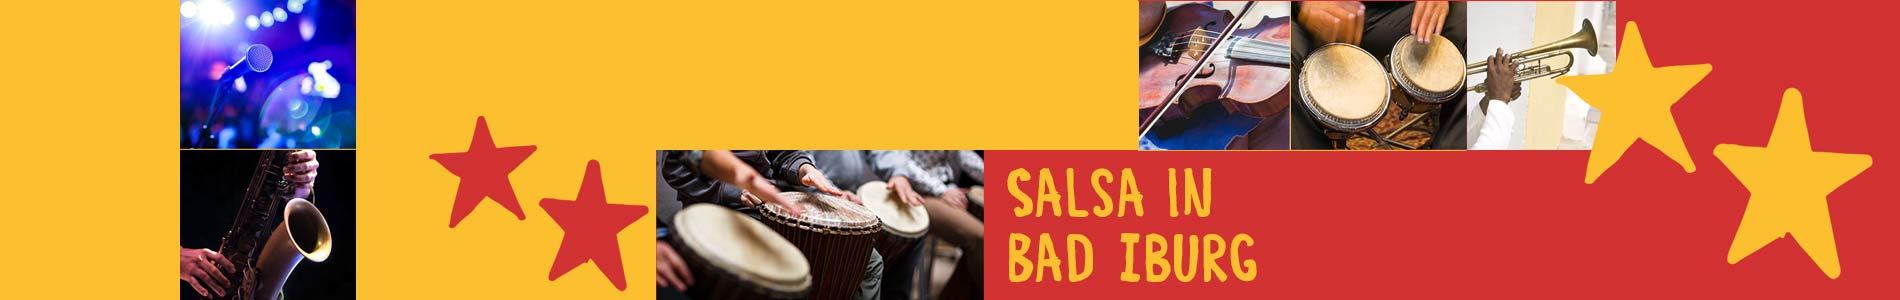 Salsa in Bad Iburg – Salsa lernen und tanzen, Tanzkurse, Partys, Veranstaltungen